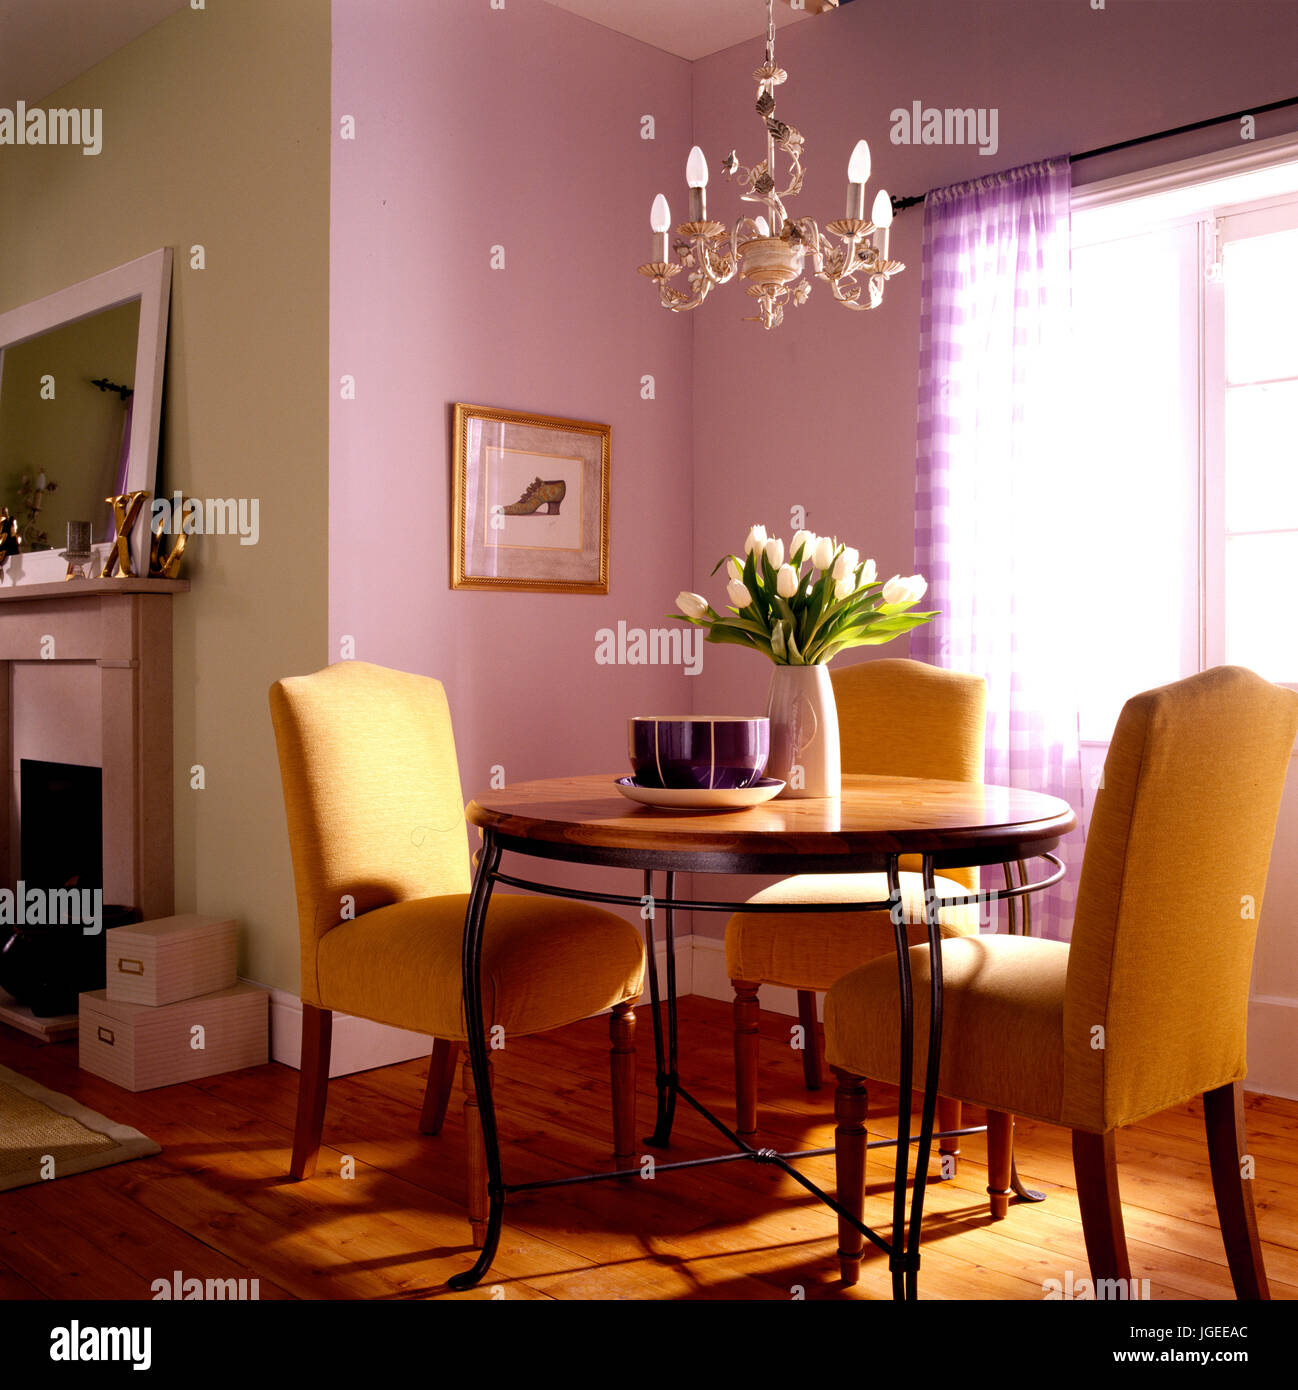 Salle à manger avec table et chaise design chaises jaune Banque D'Images